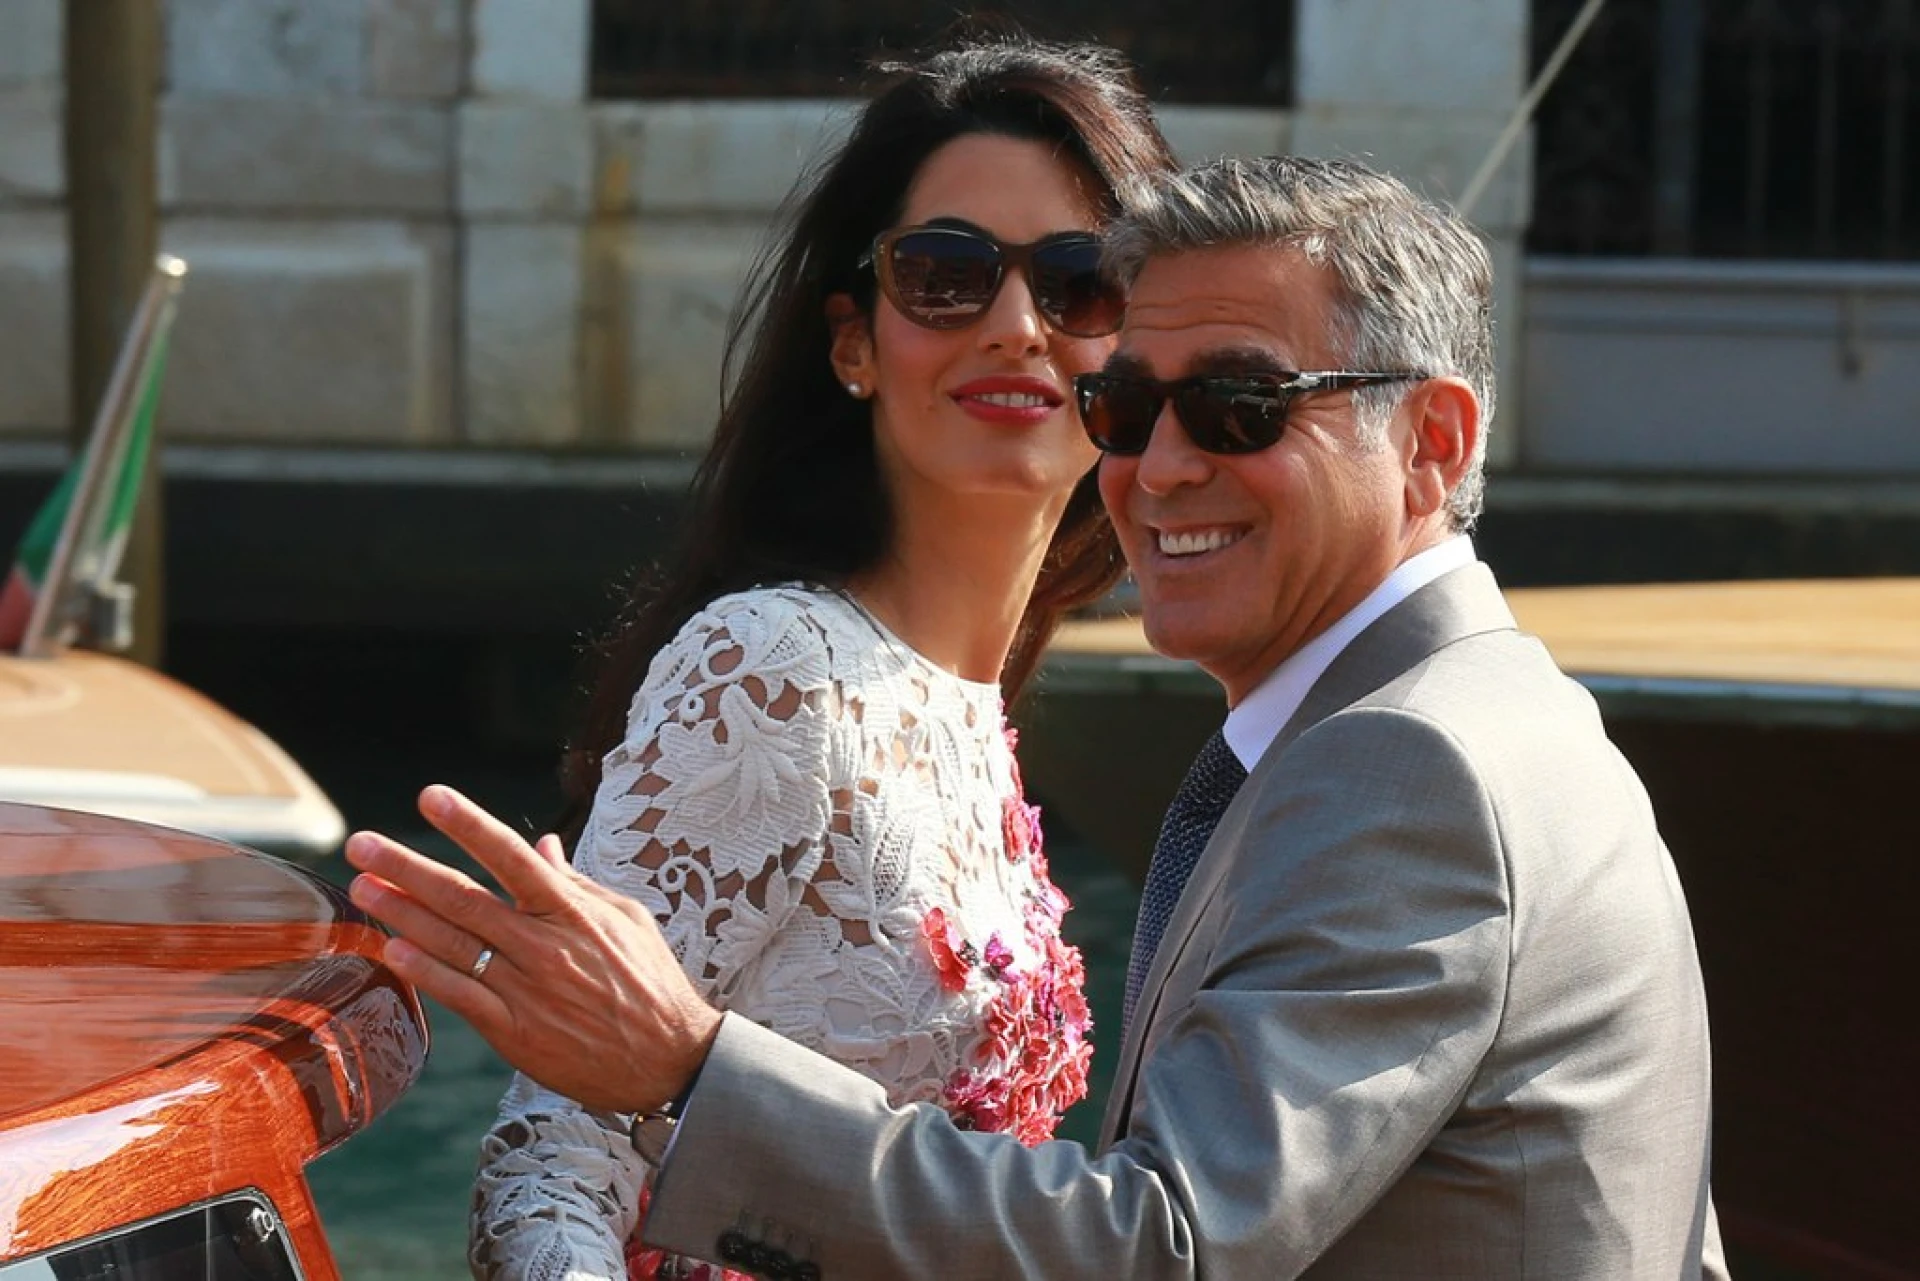 Ето така се прави: Джордж и Амал Клуни се извиниха предварително за това, че децата им може да плачат в самолета